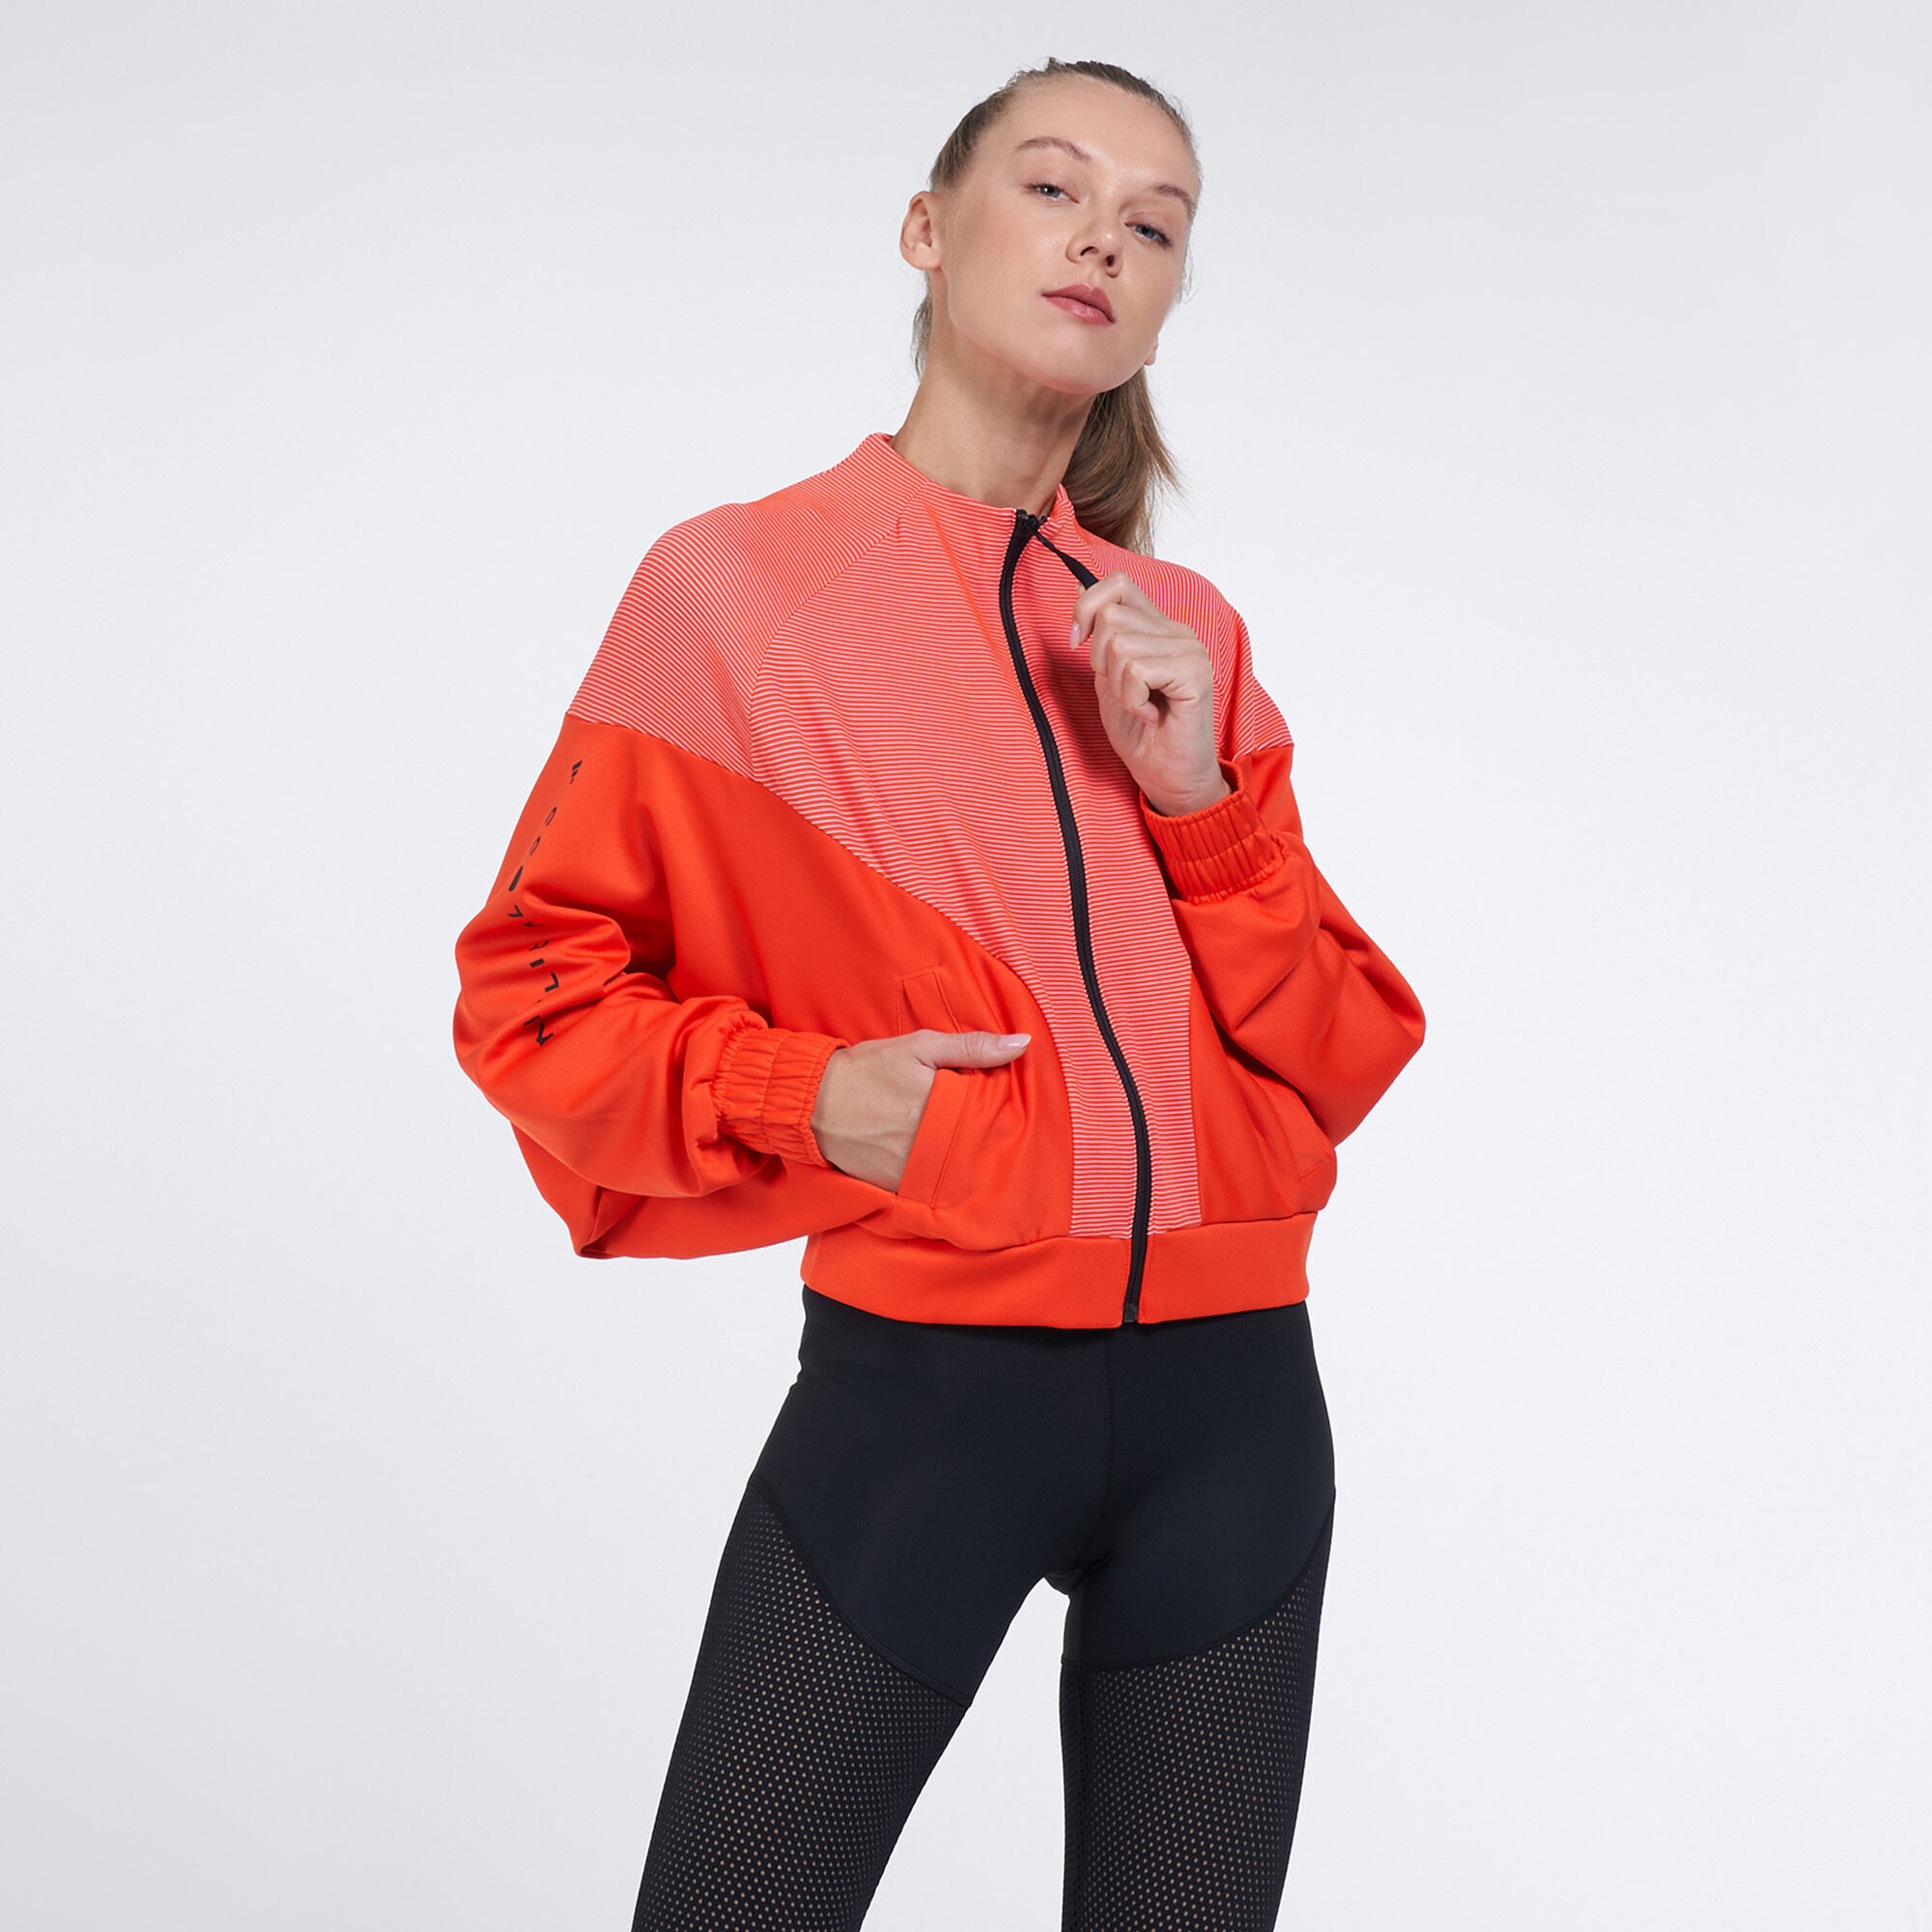 Adidas Women's Karlie Kloss Support Bra - XS - Orange - GH8219